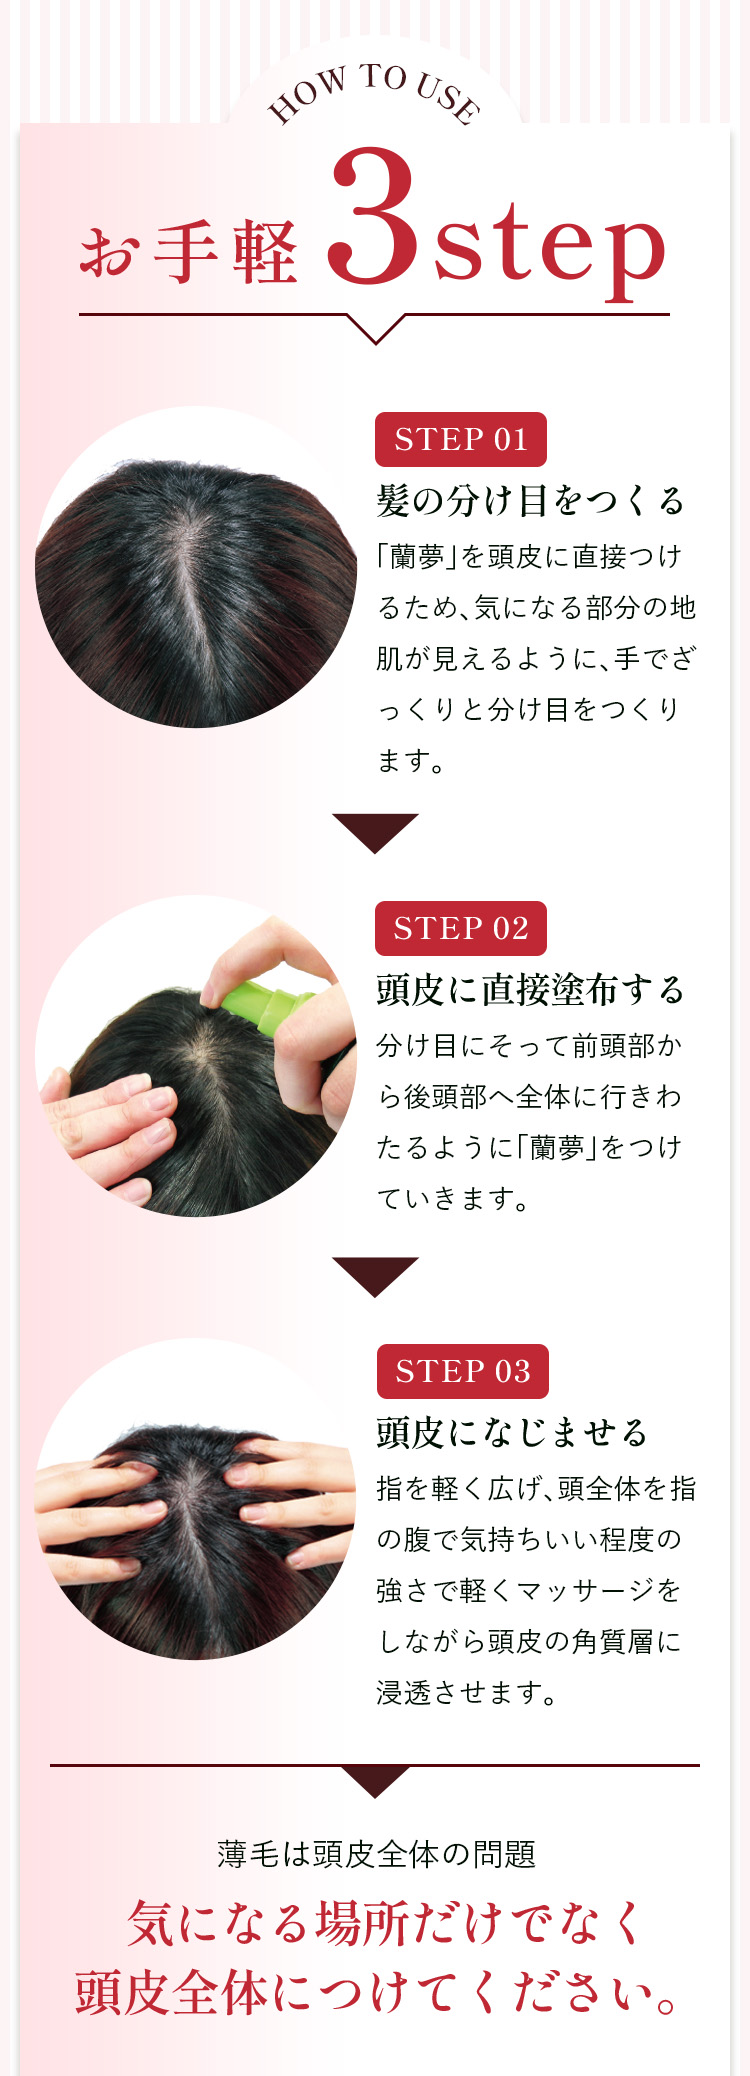 How To Use お手軽3step